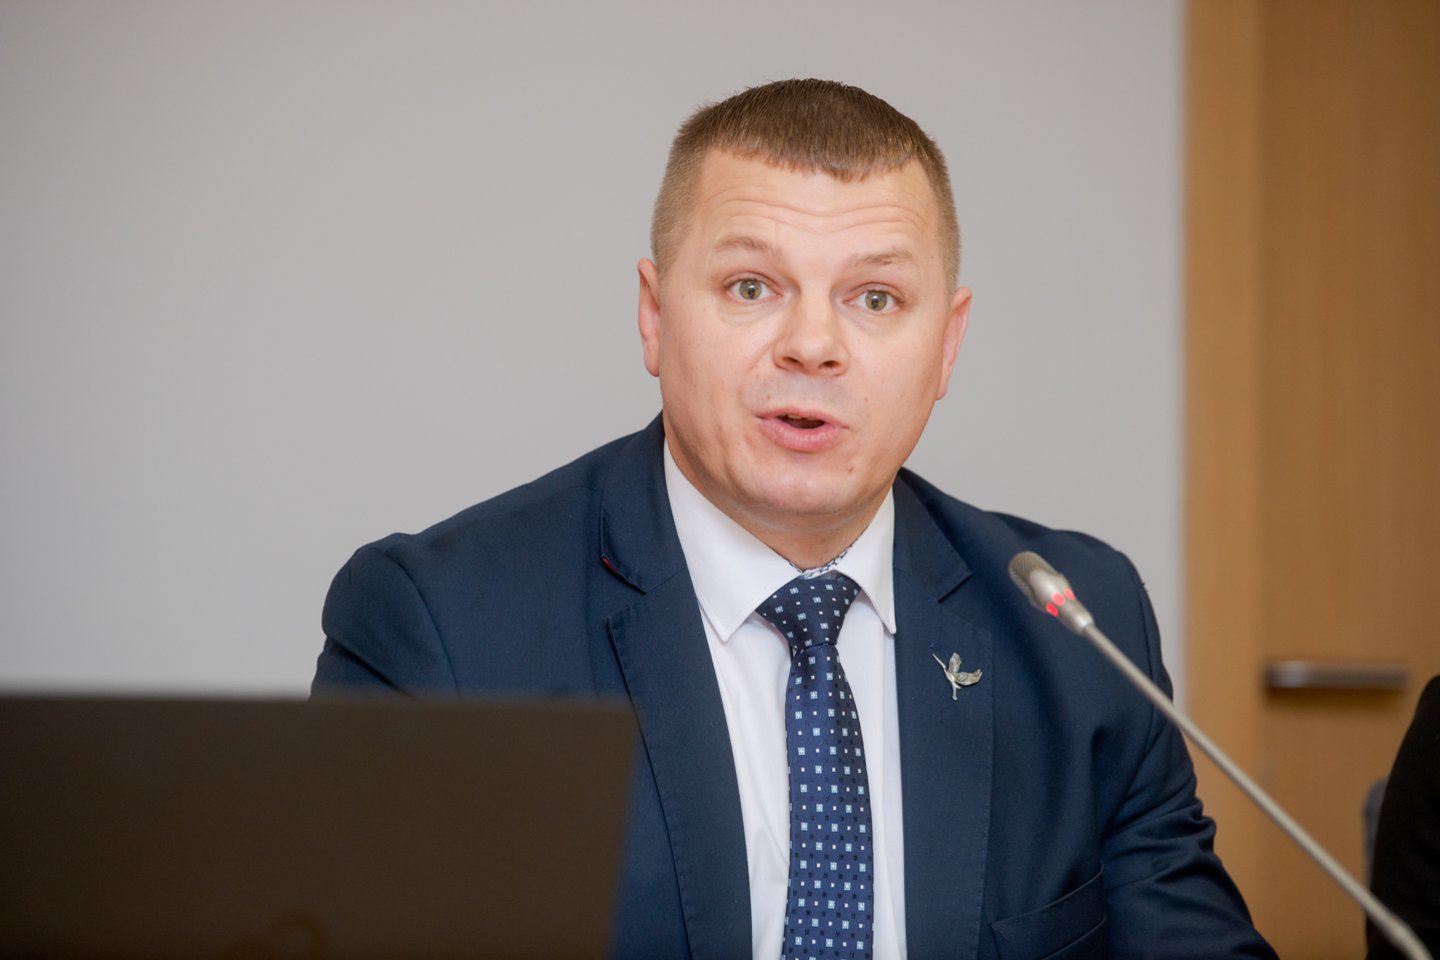 K.Smirnovas pernai nebuvo perrinktas į Seimą.<br>J.Stacevičiaus nuotr.